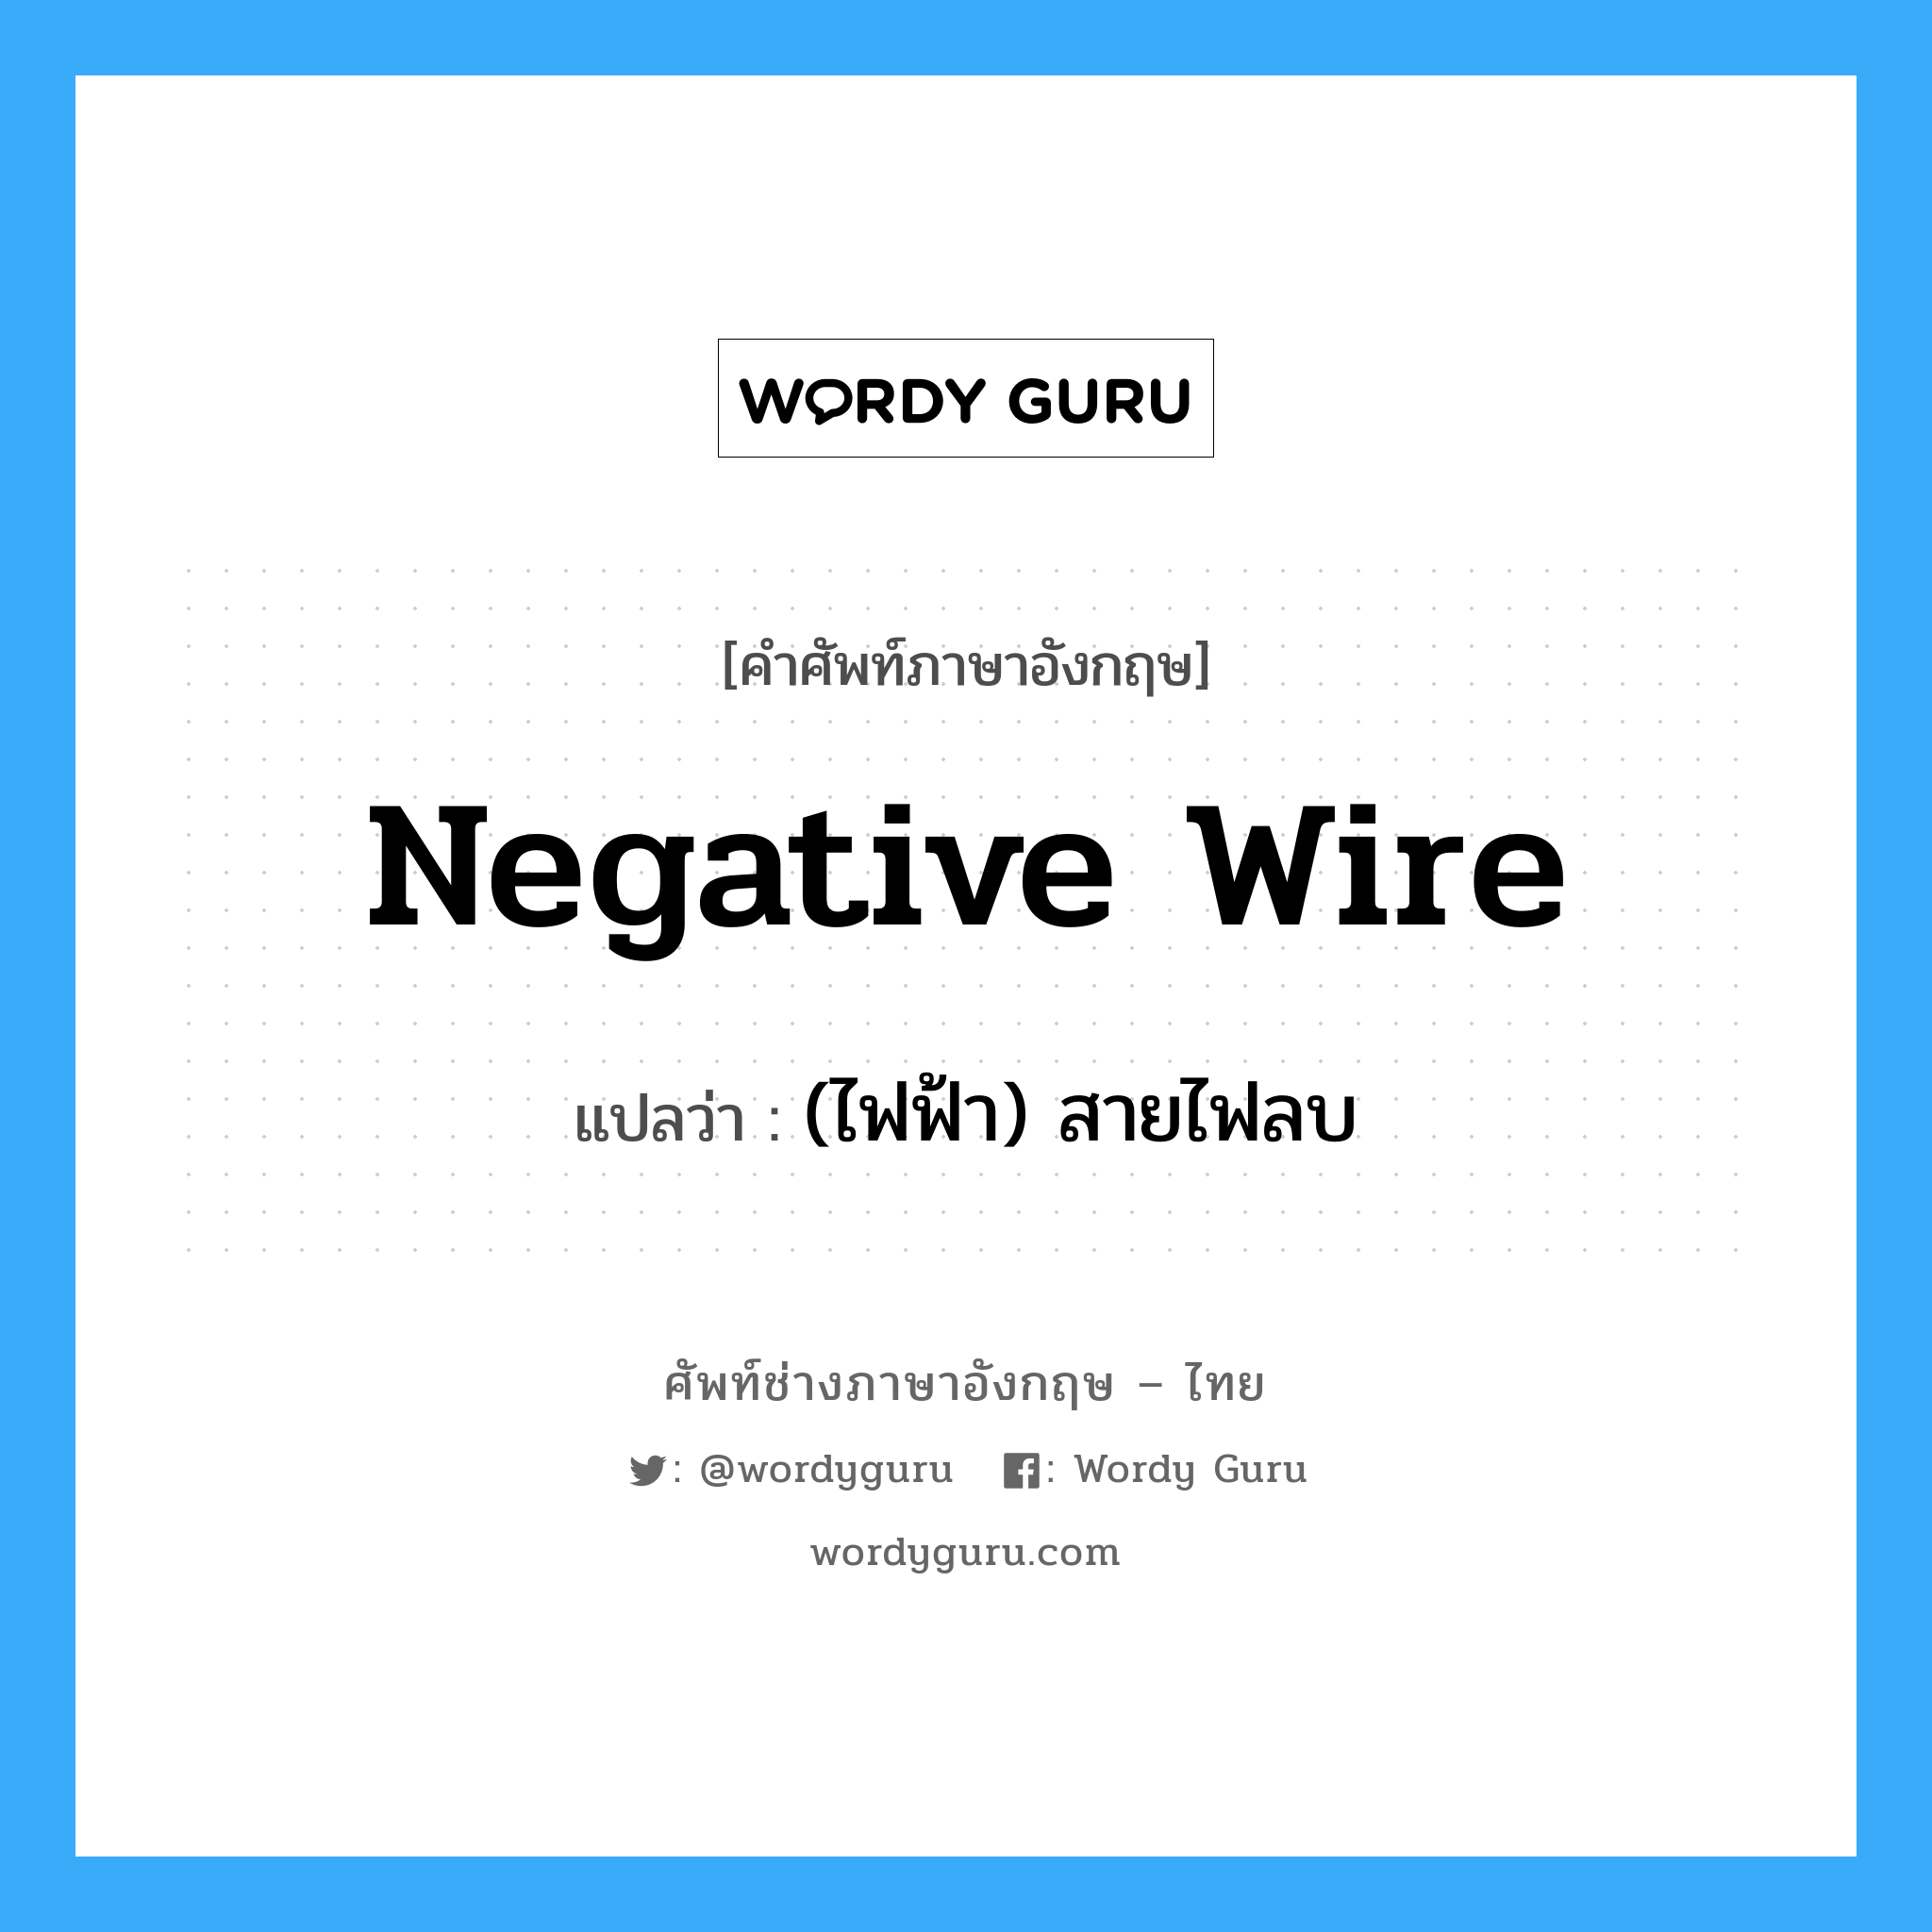 (ไฟฟ้า) สายไฟลบ ภาษาอังกฤษ?, คำศัพท์ช่างภาษาอังกฤษ - ไทย (ไฟฟ้า) สายไฟลบ คำศัพท์ภาษาอังกฤษ (ไฟฟ้า) สายไฟลบ แปลว่า negative wire